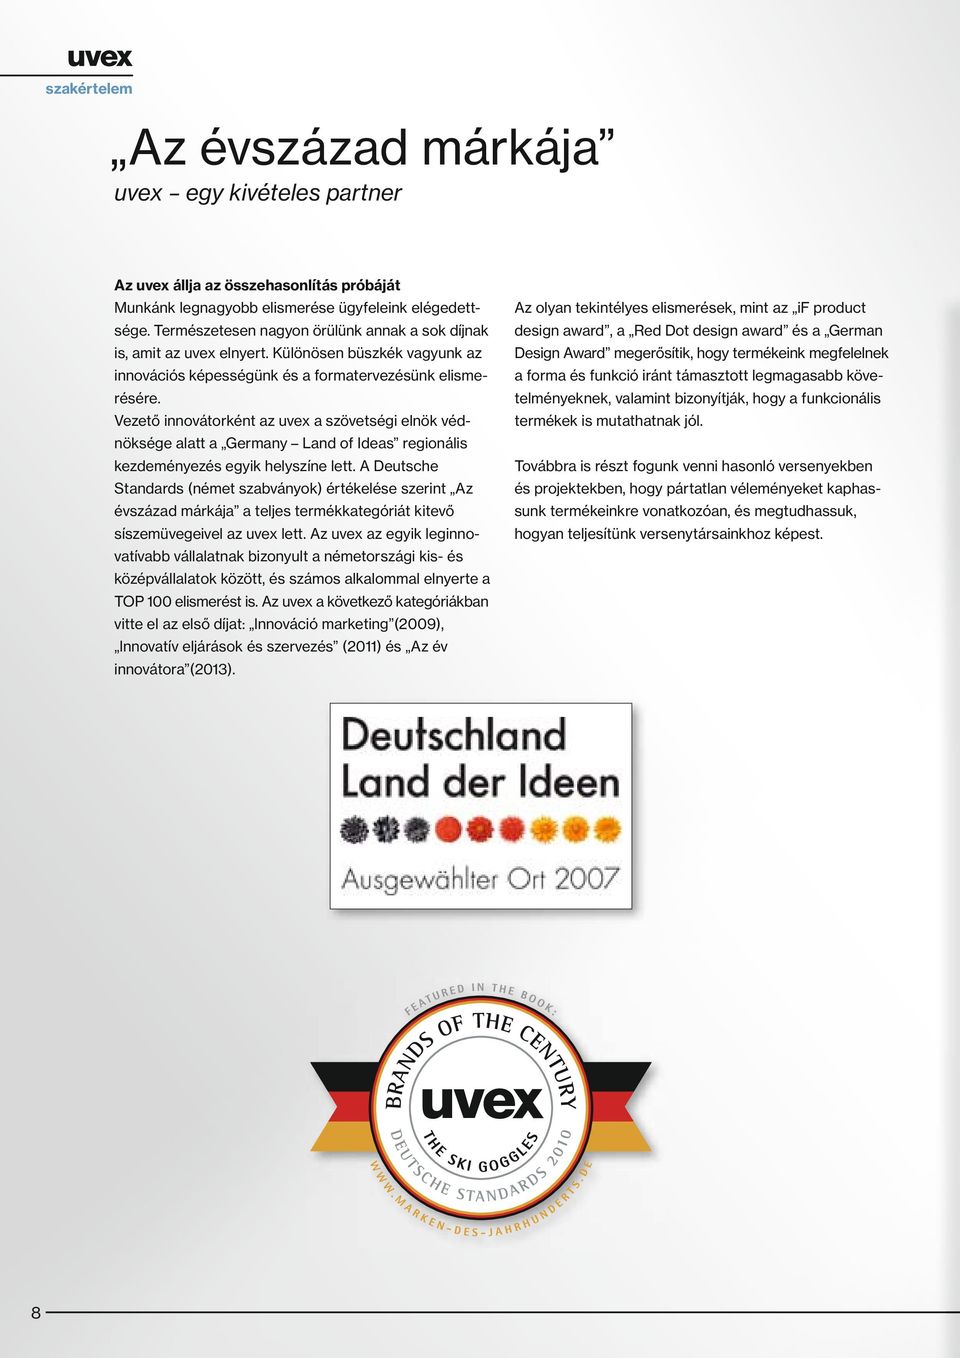 Vezető innovátorként az uvex a szövetségi elnök védnöksége alatt a Germany Land of Ideas regionális kezdeményezés egyik helyszíne lett.